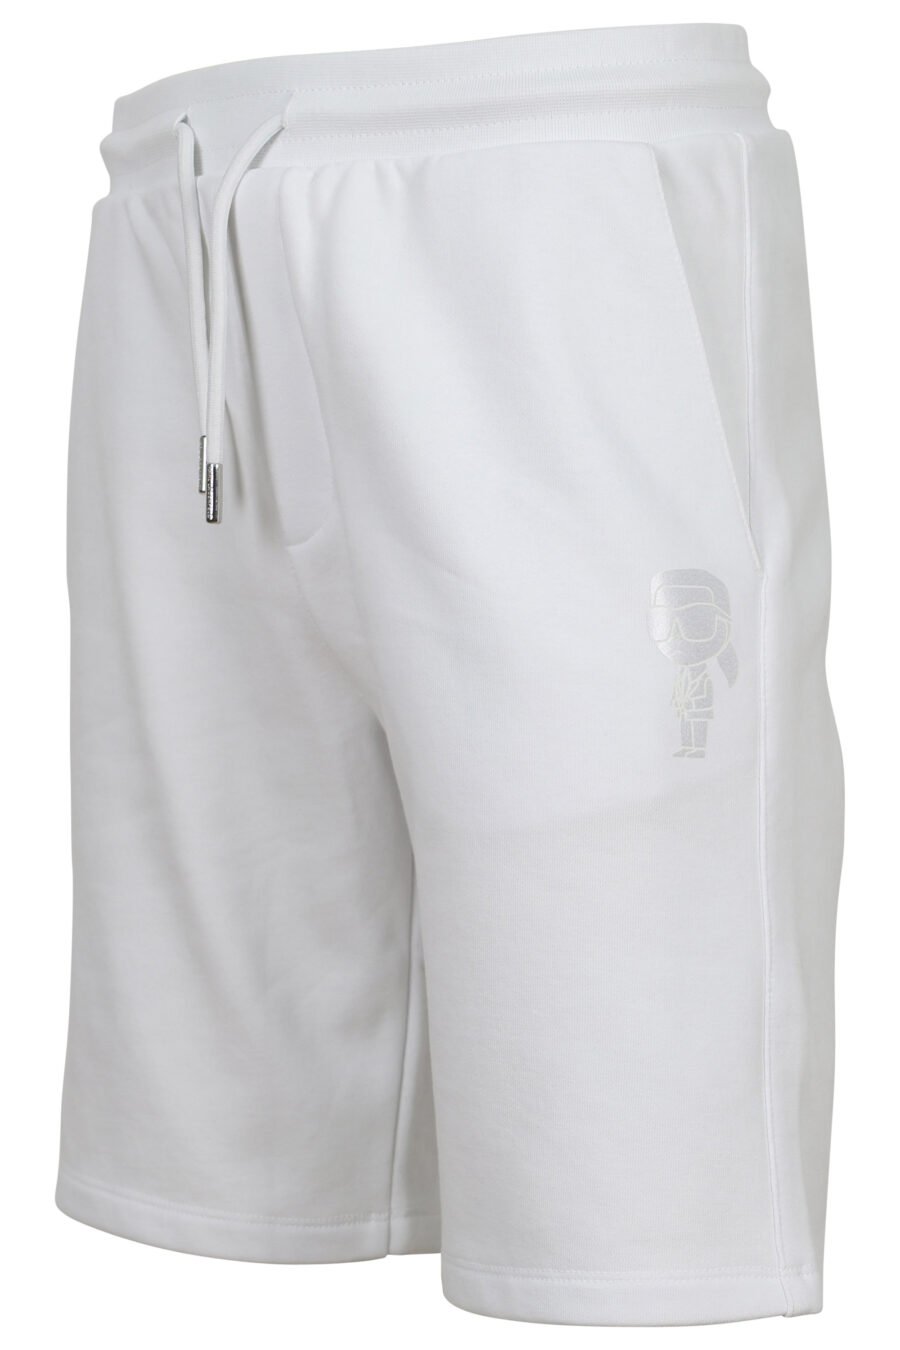 Pantalón de chándal corto blanco con minilogo azul en goma - 4062226782234 1